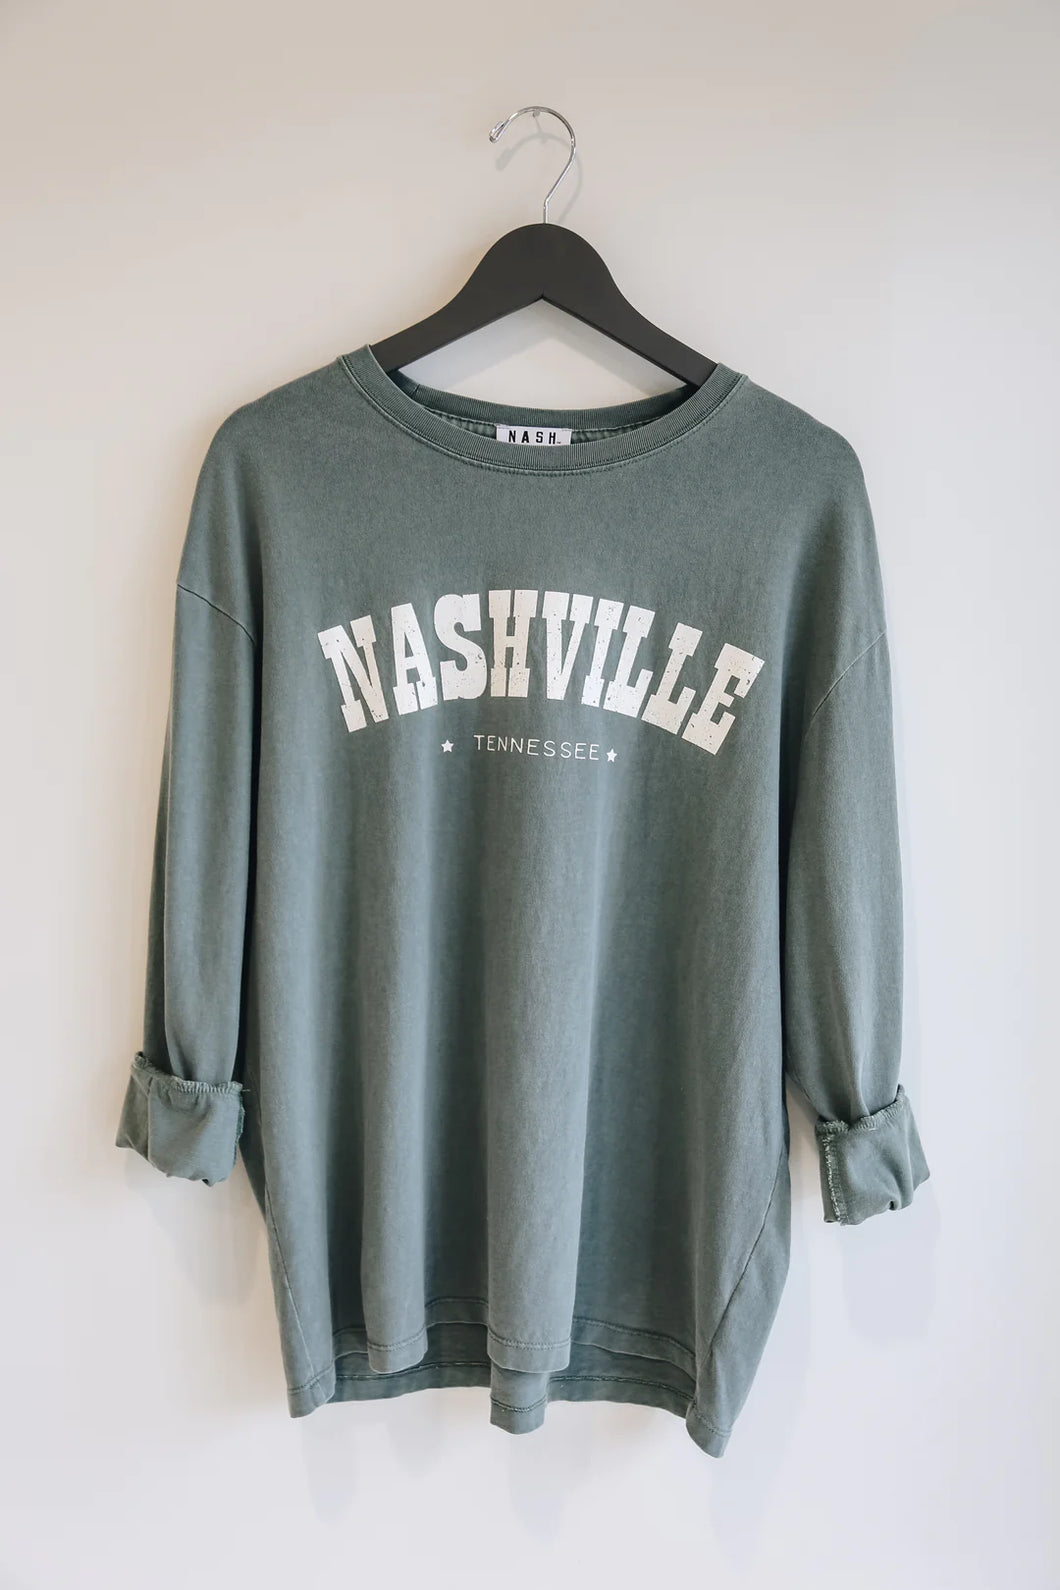 Nashville Durango Oversize Long Sleeve Tshirt